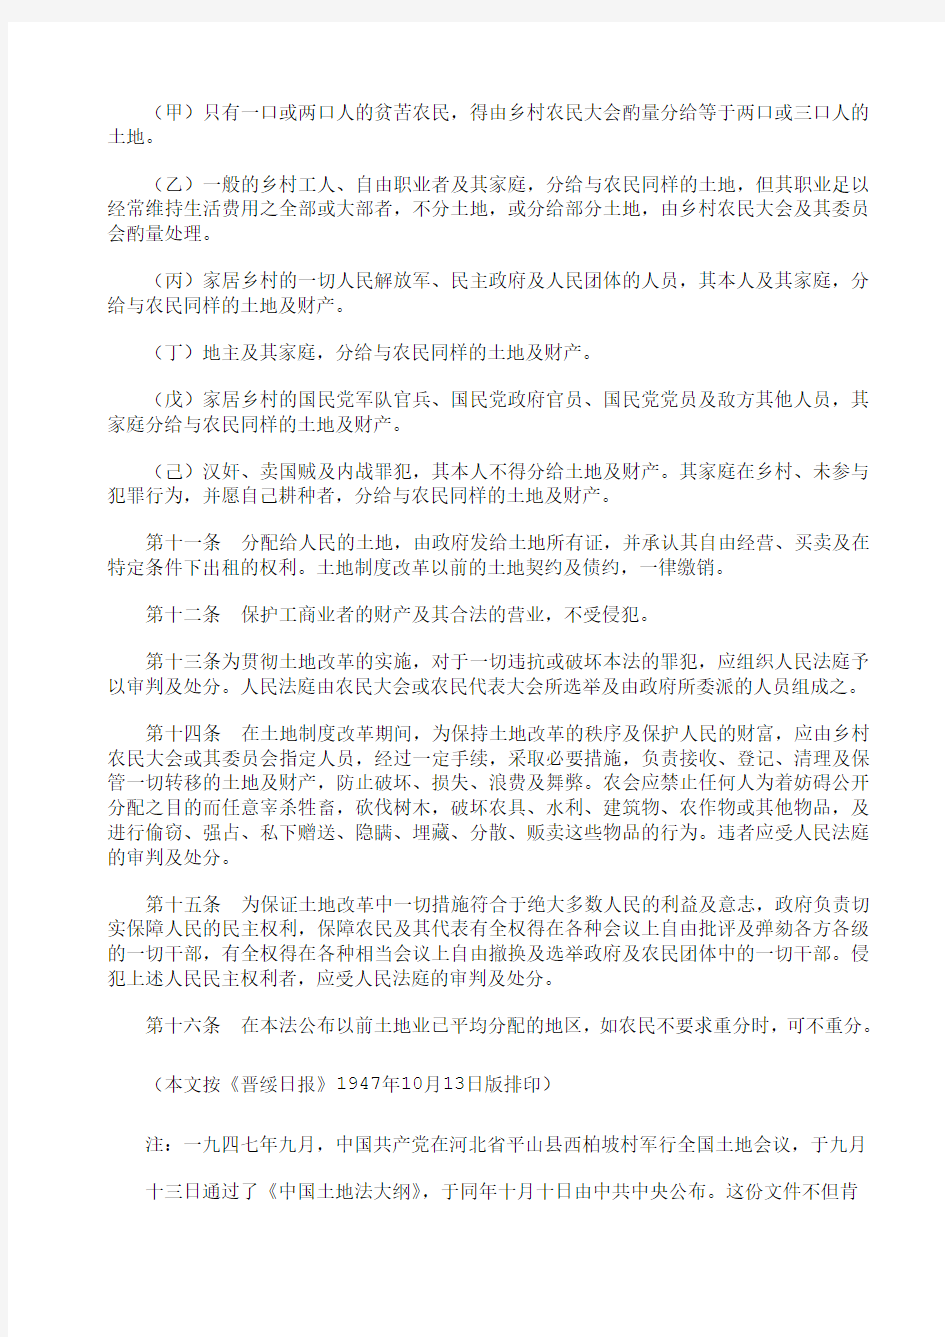 中国土地法大纲(1947年10月10日公布)